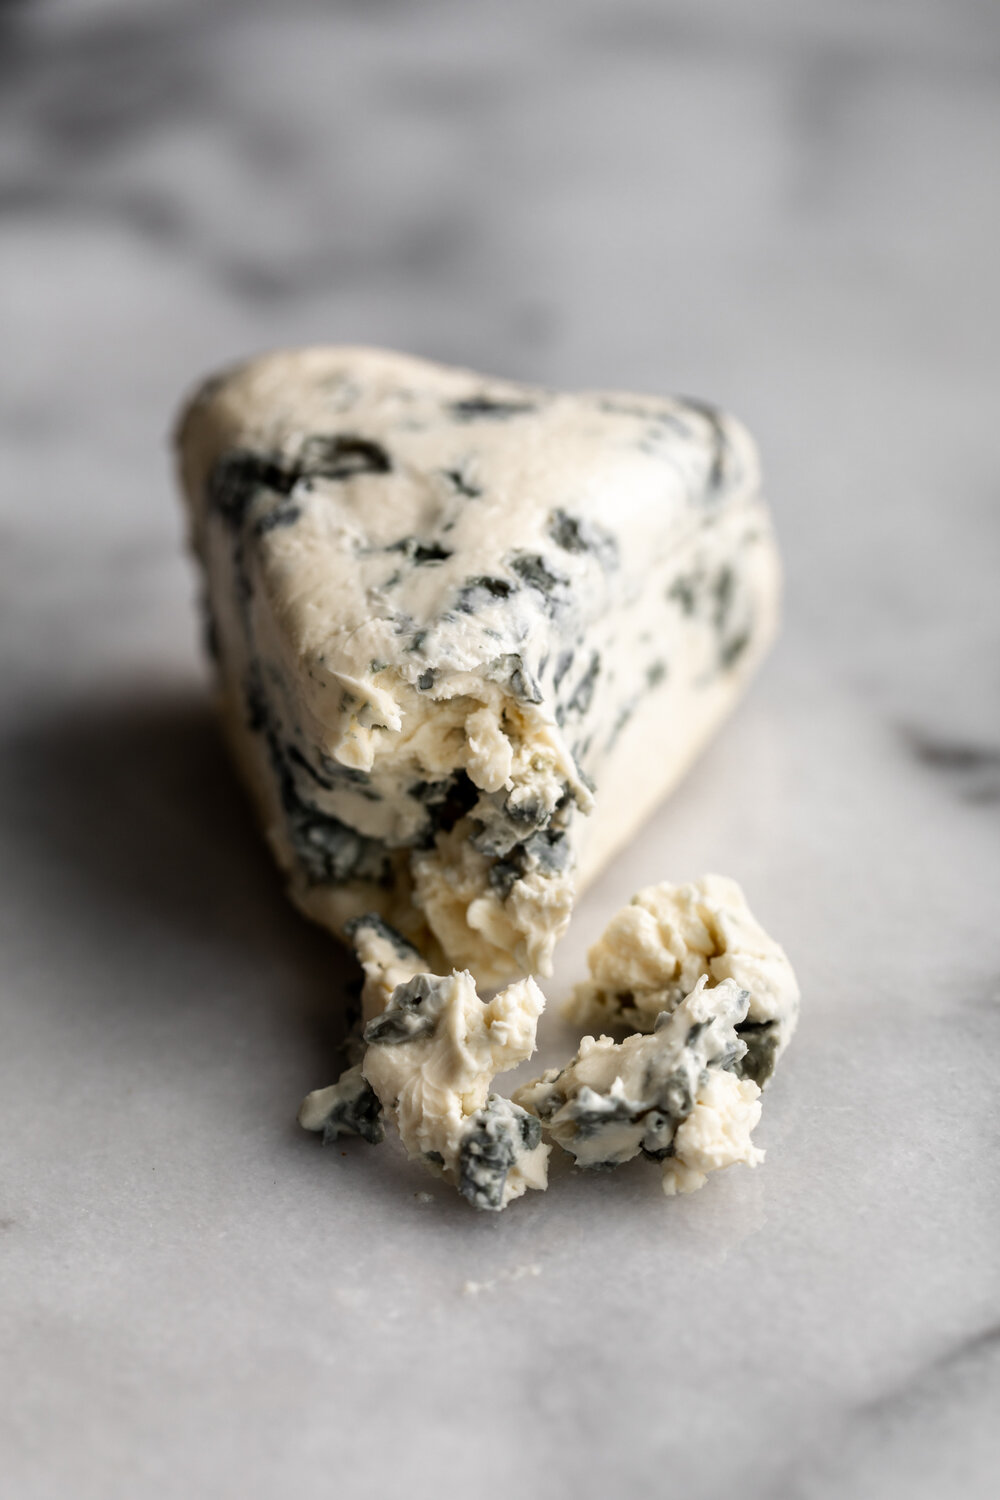 blue cheese 